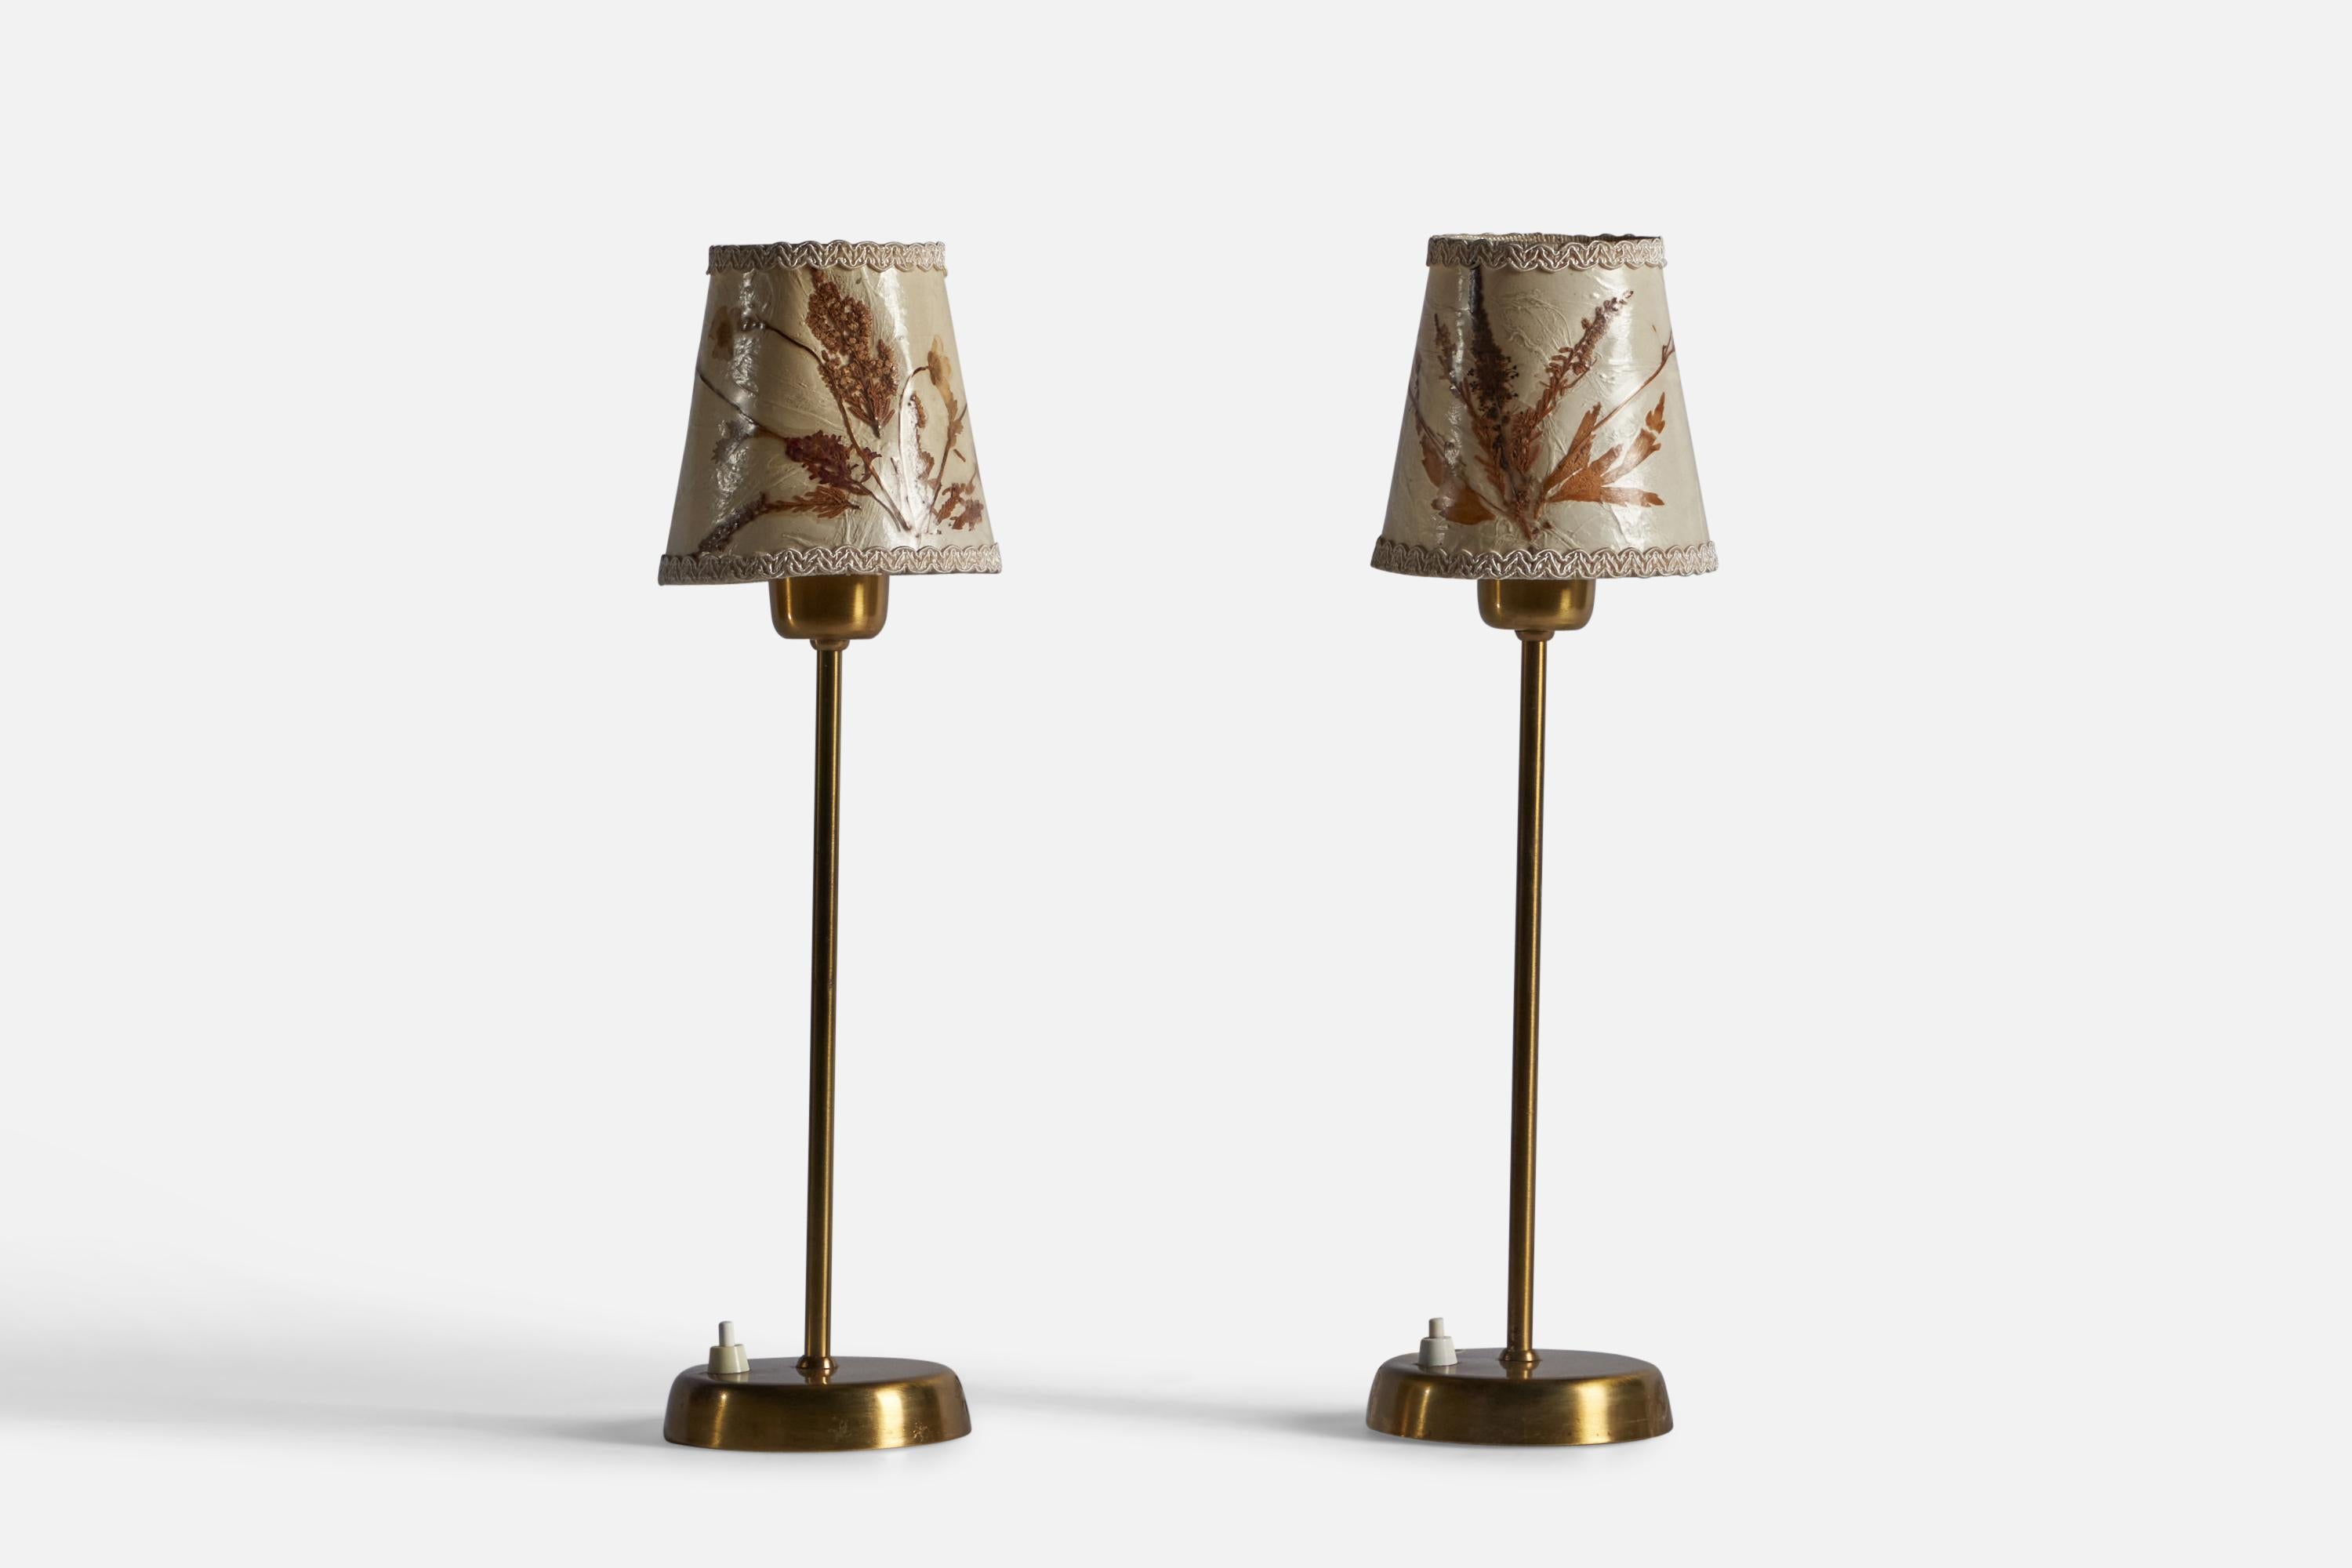 Paire de lampes de table en laiton et papier, conçues et produites par Tyringe Konsthantverk, Suède, c. 1950.

Dimensions totales : 17